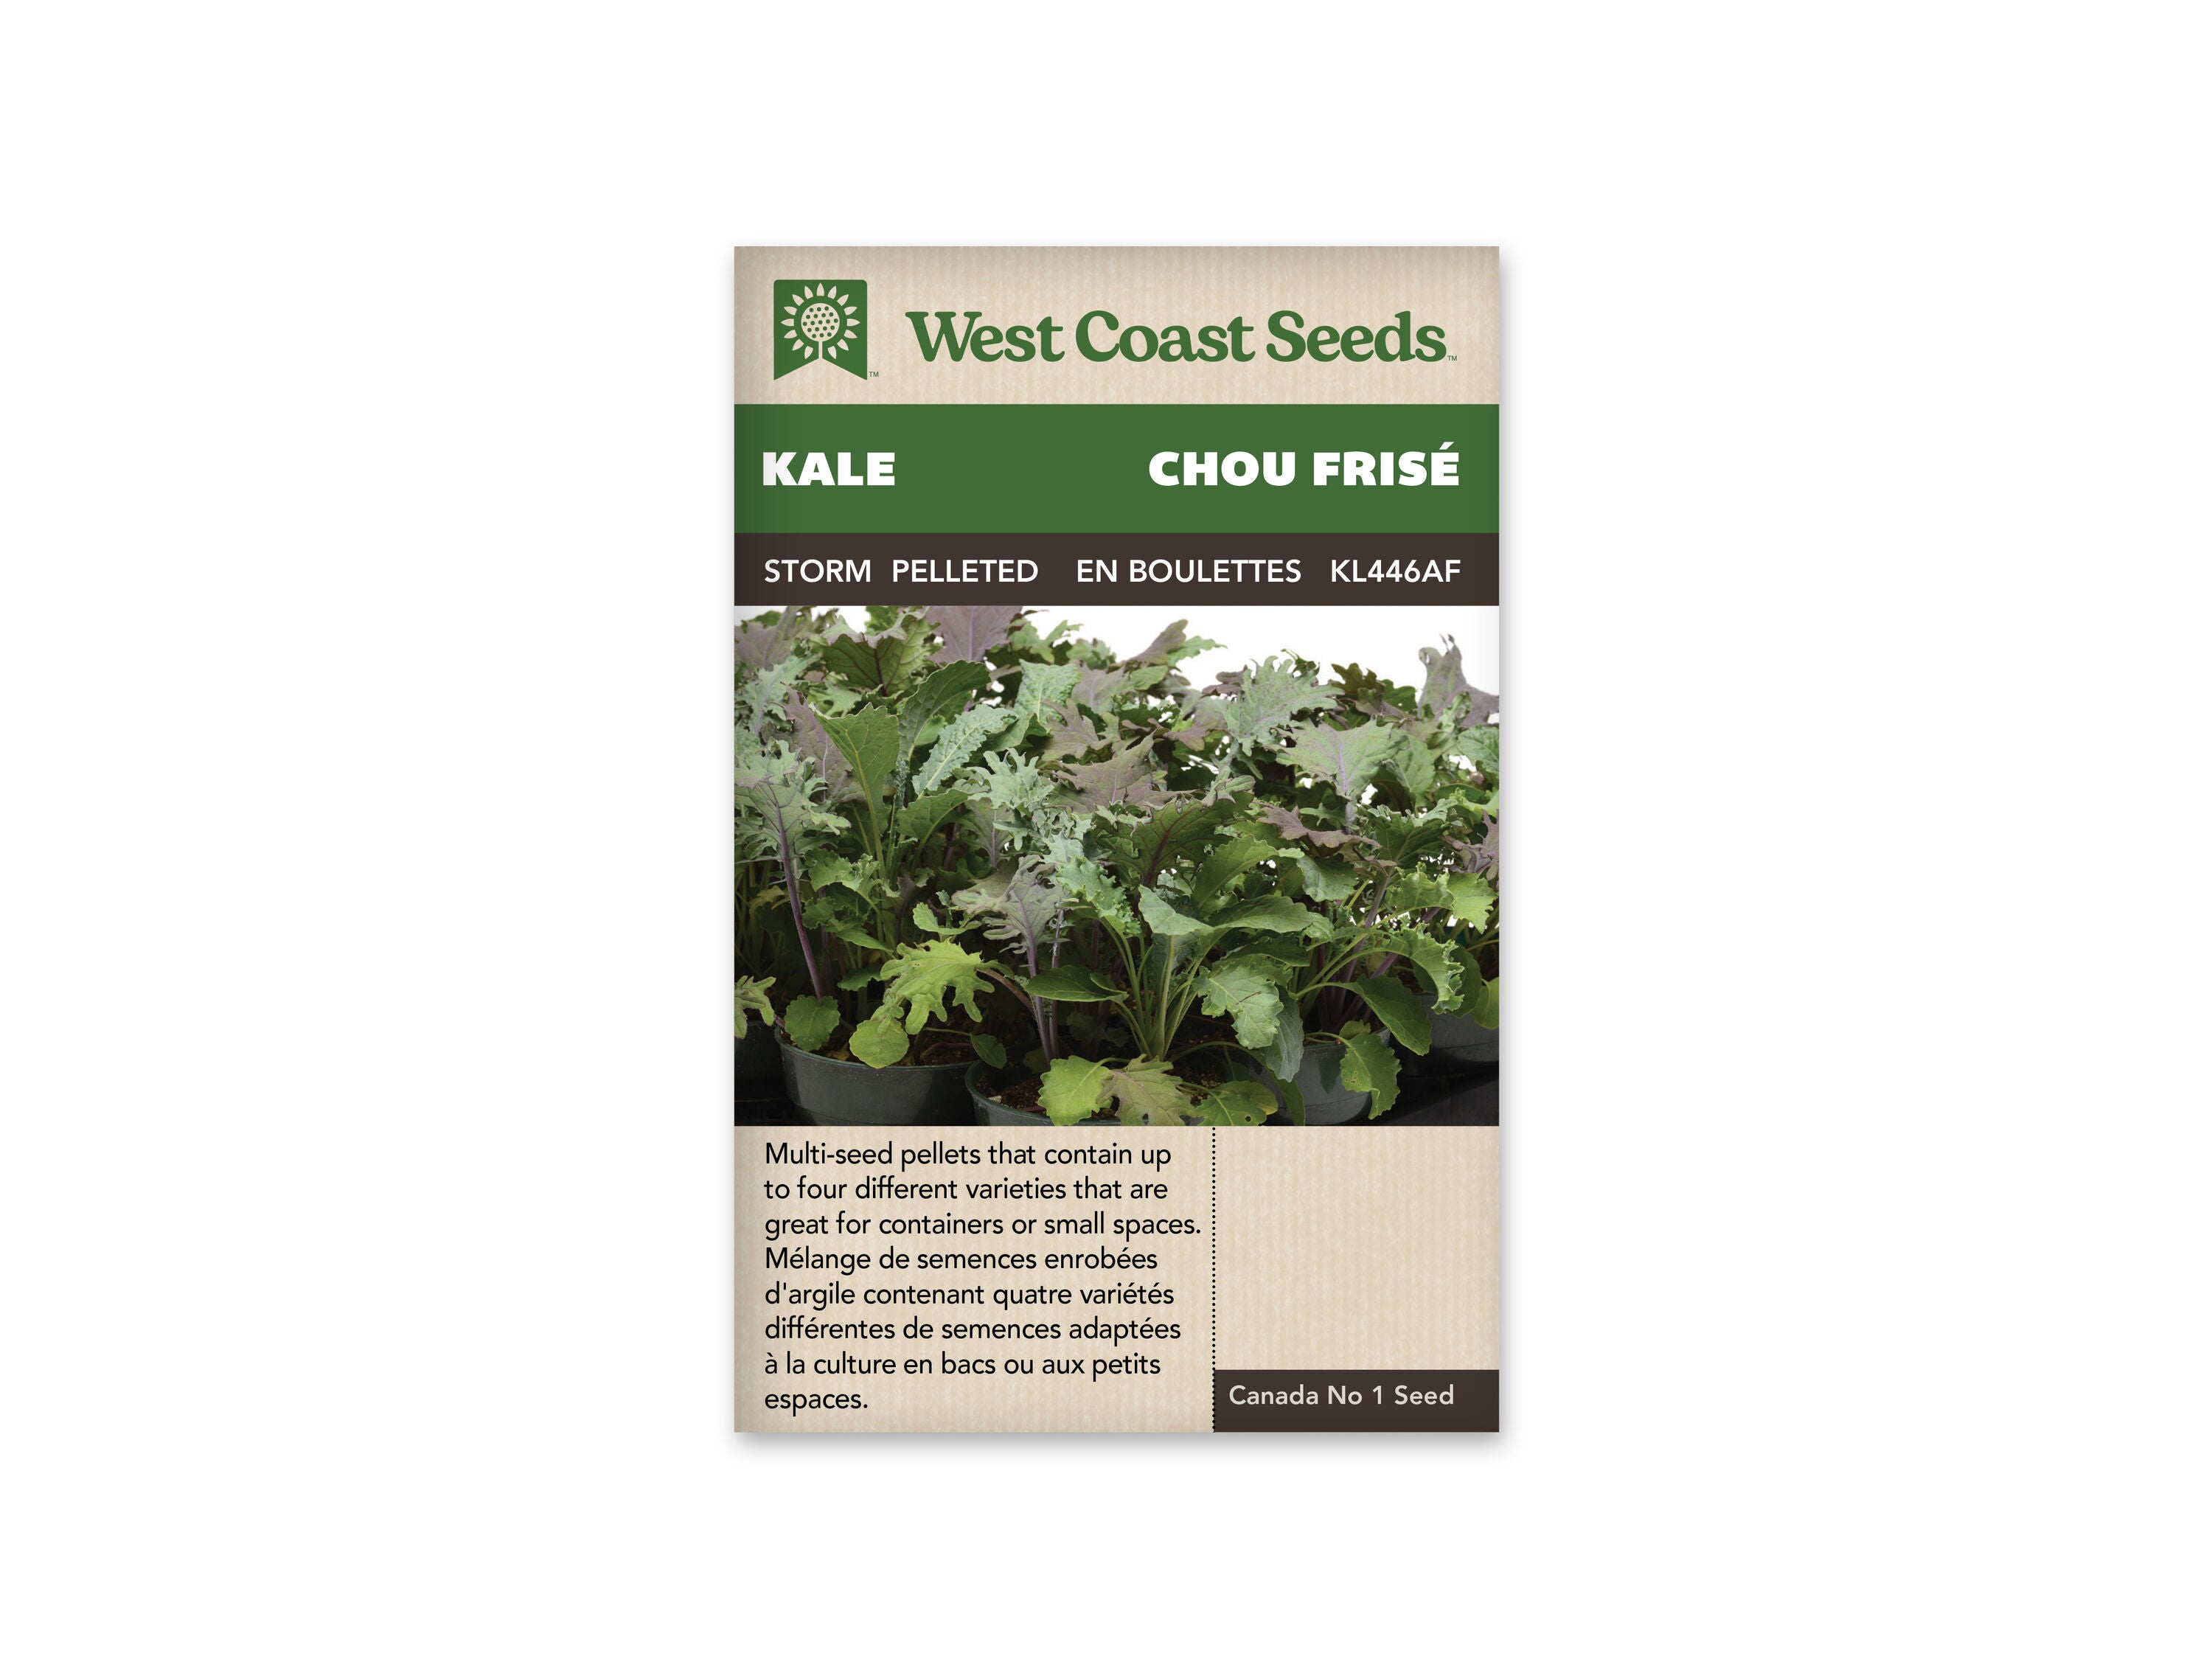 Kale Storm Pelleted Seed